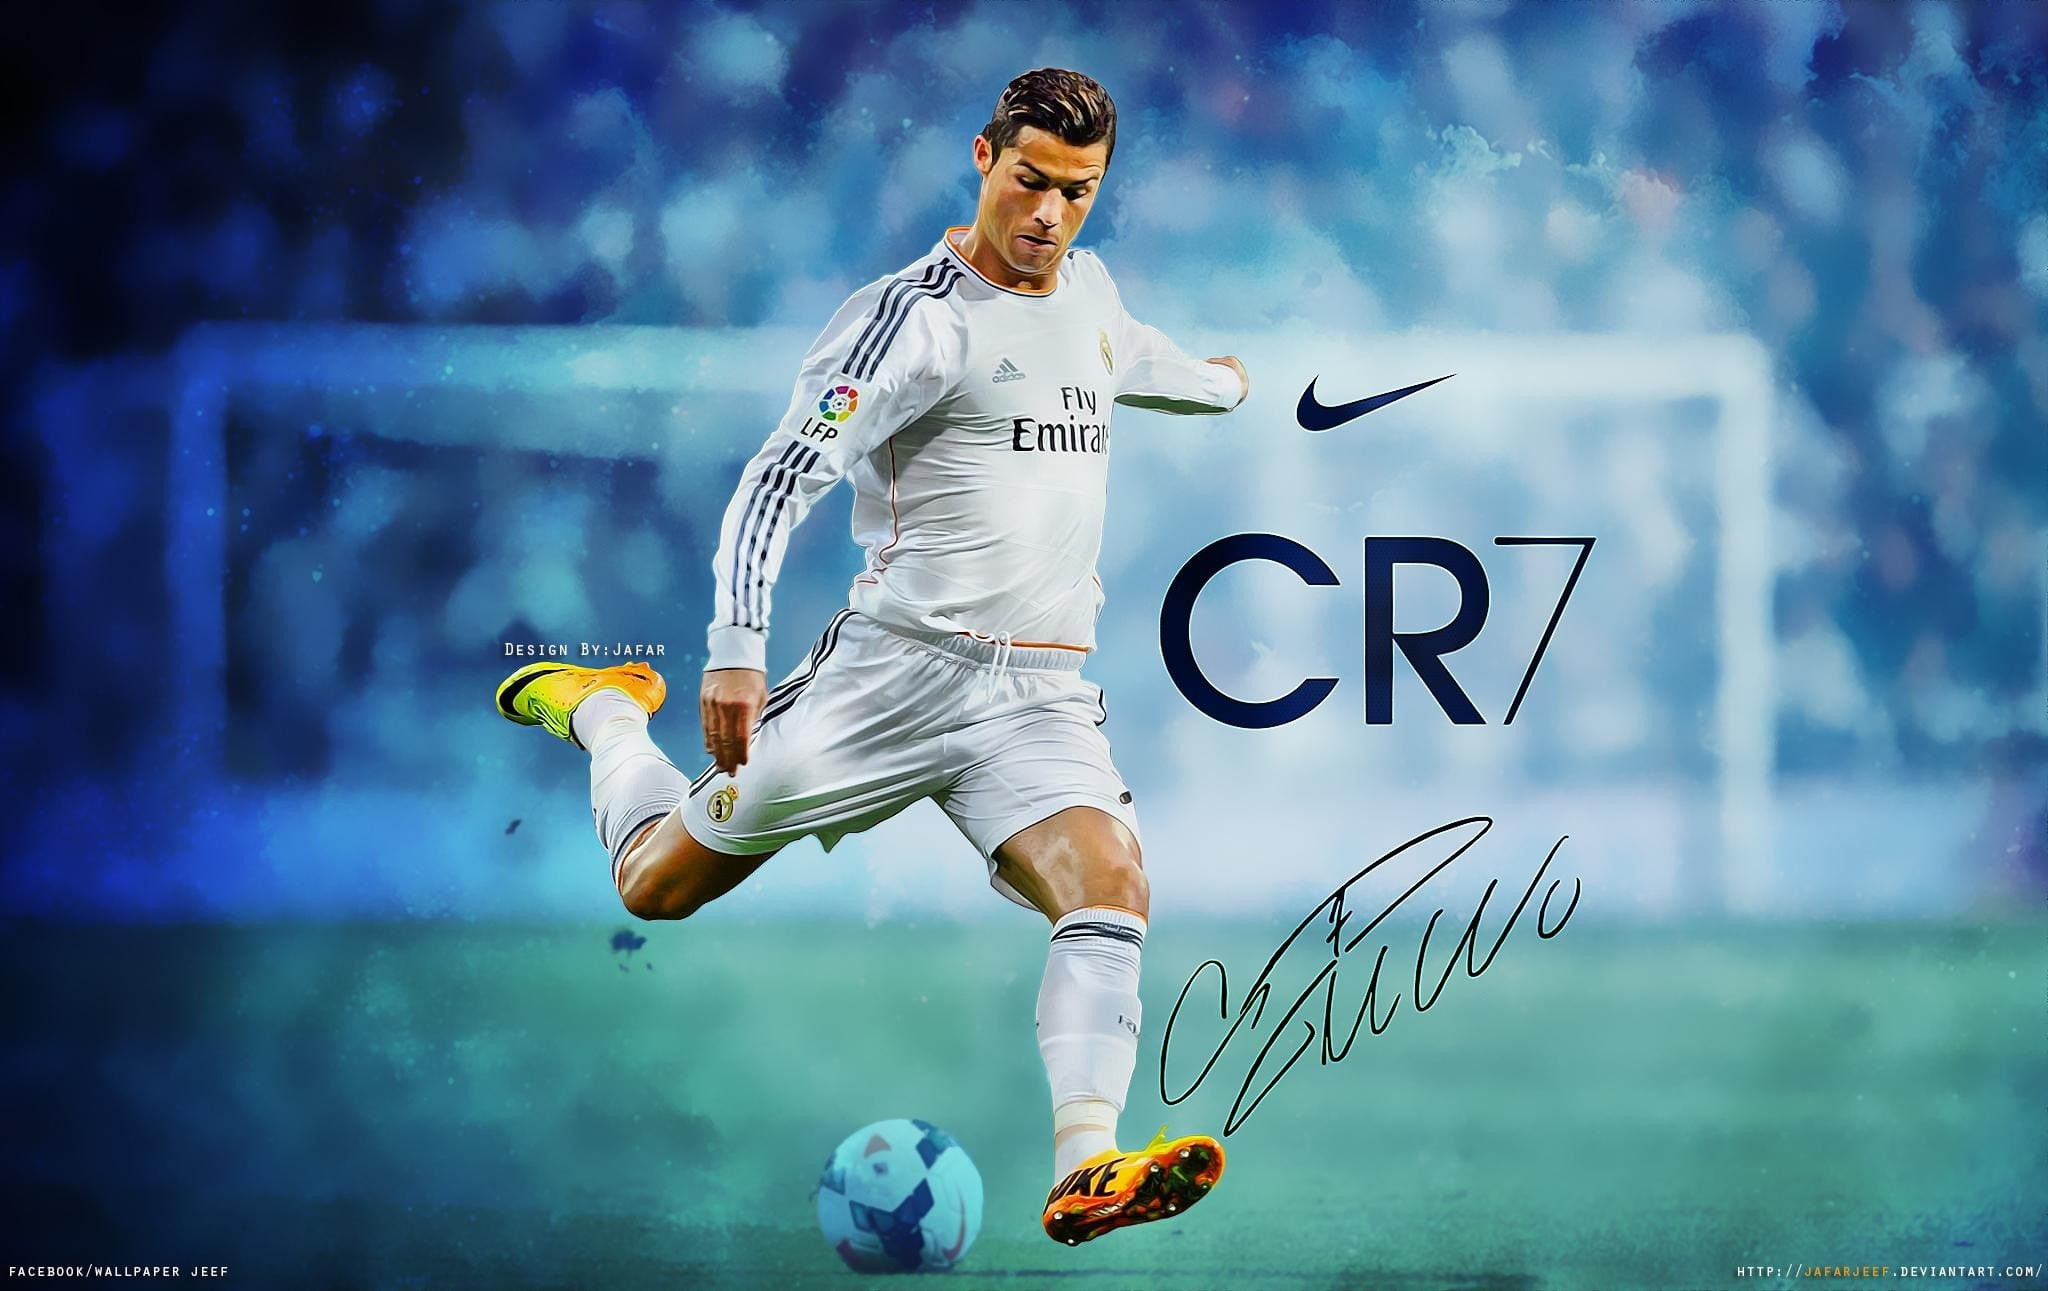 CR7, Cristiano Ronaldo